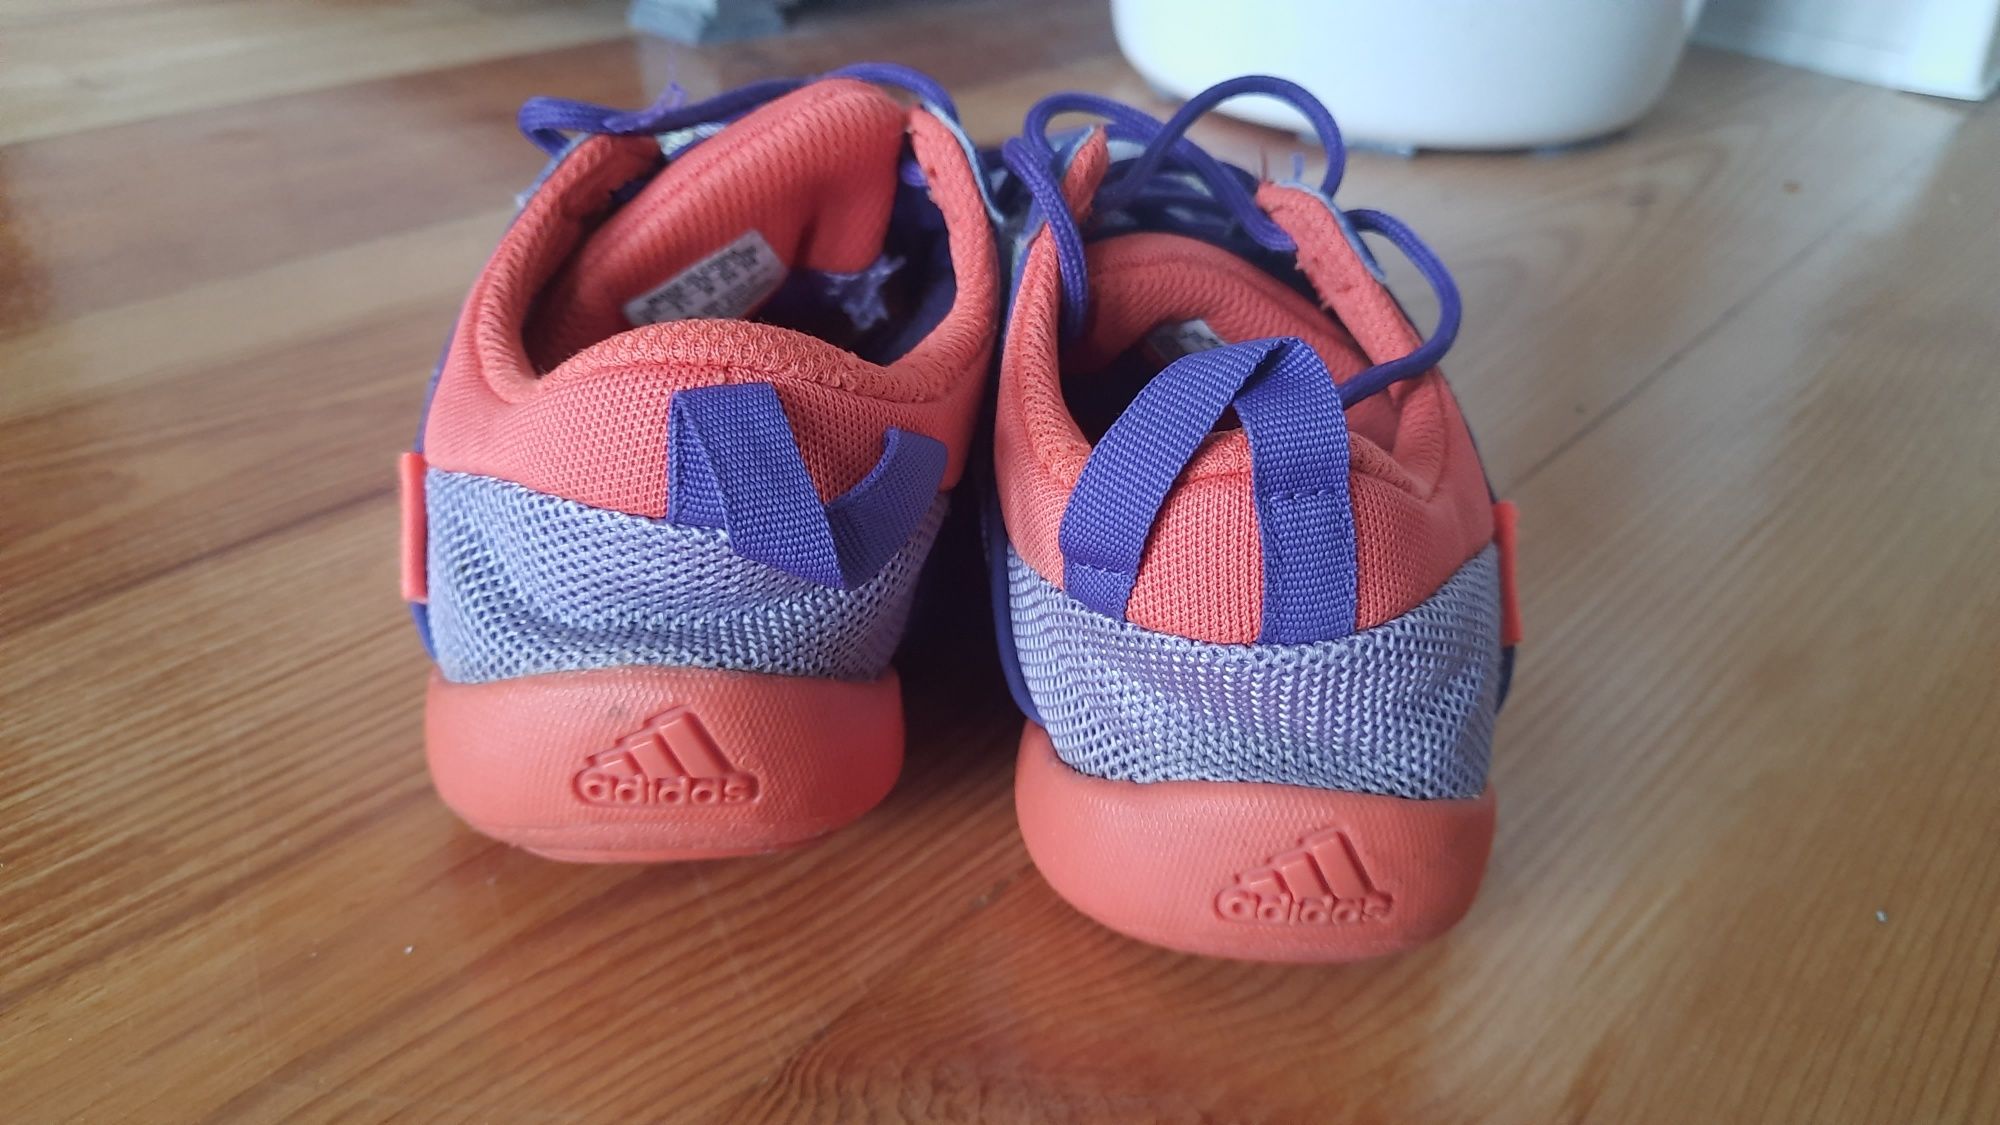 Buty Adidas, sznurowane z siateczką, chłopięce, rozmiar 35